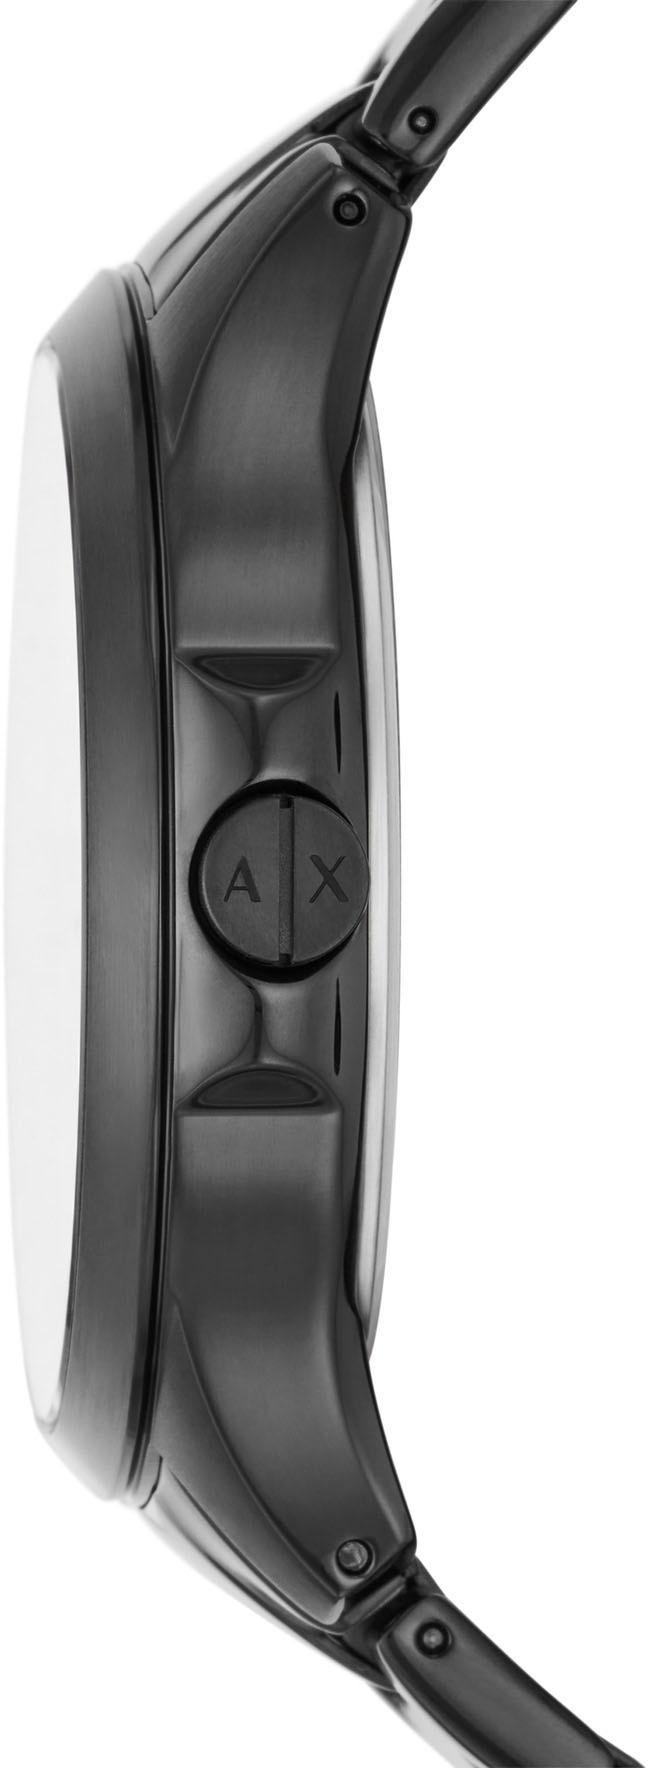 ARMANI EXCHANGE Automatikuhr »AX2444«, Armbanduhr, Herrenuhr, Mechanische Uhr, Datum, analog